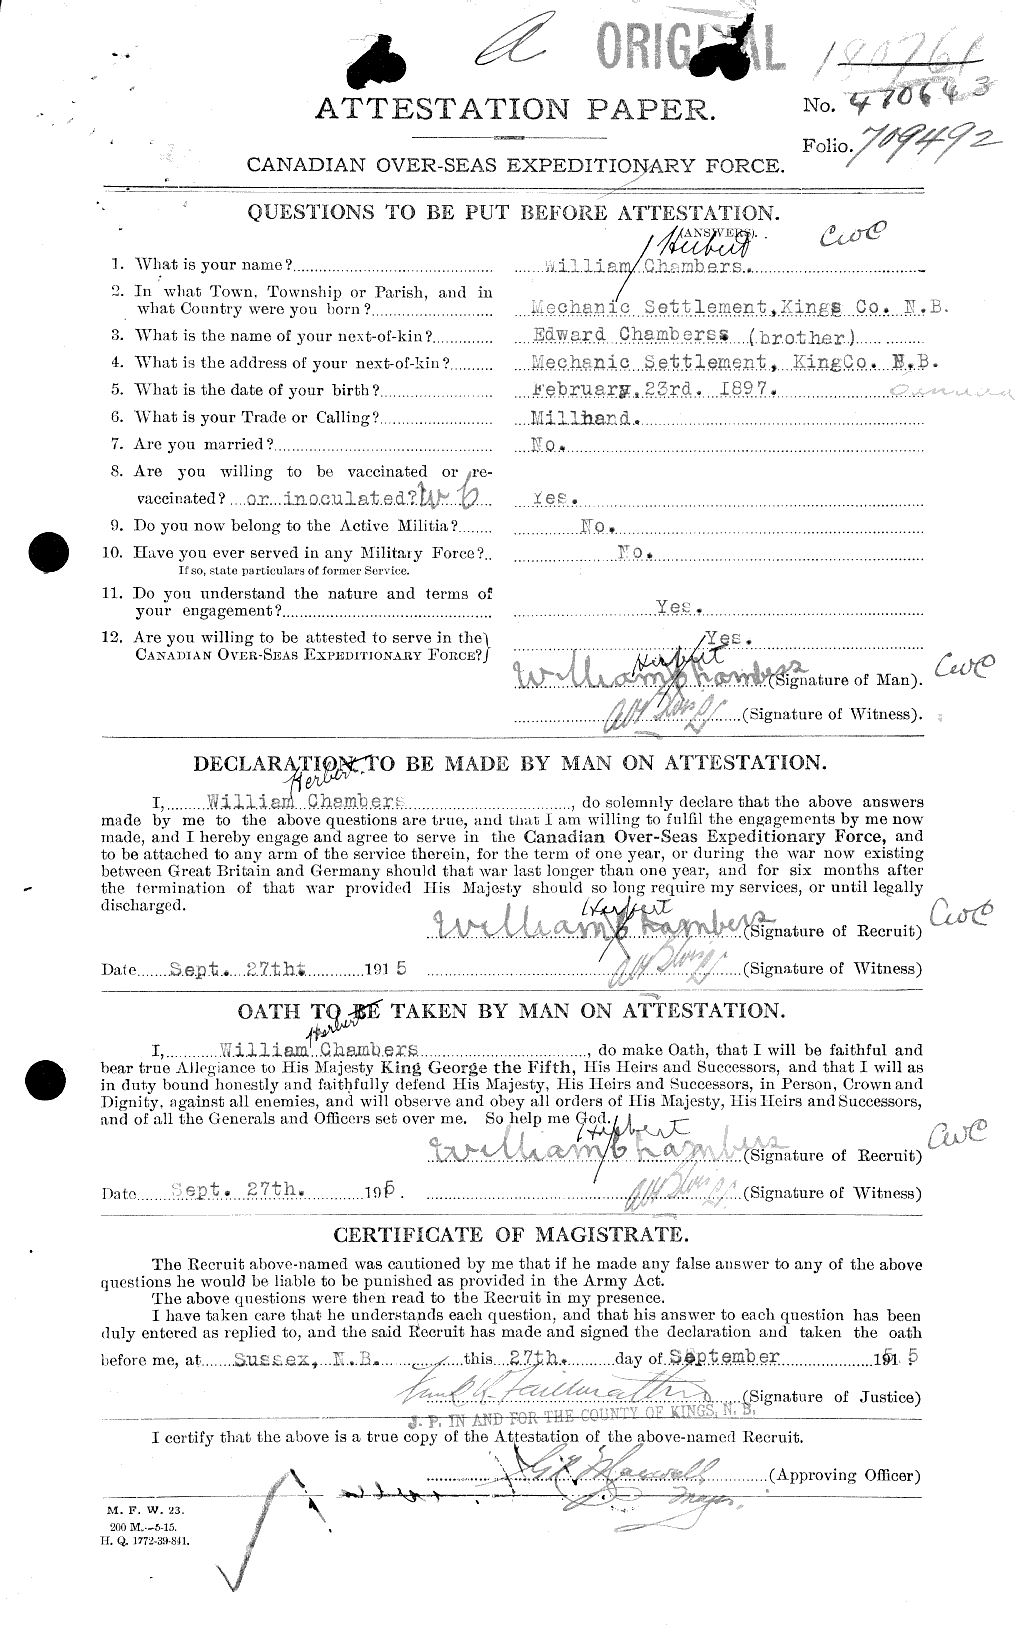 Dossiers du Personnel de la Première Guerre mondiale - CEC 016936a